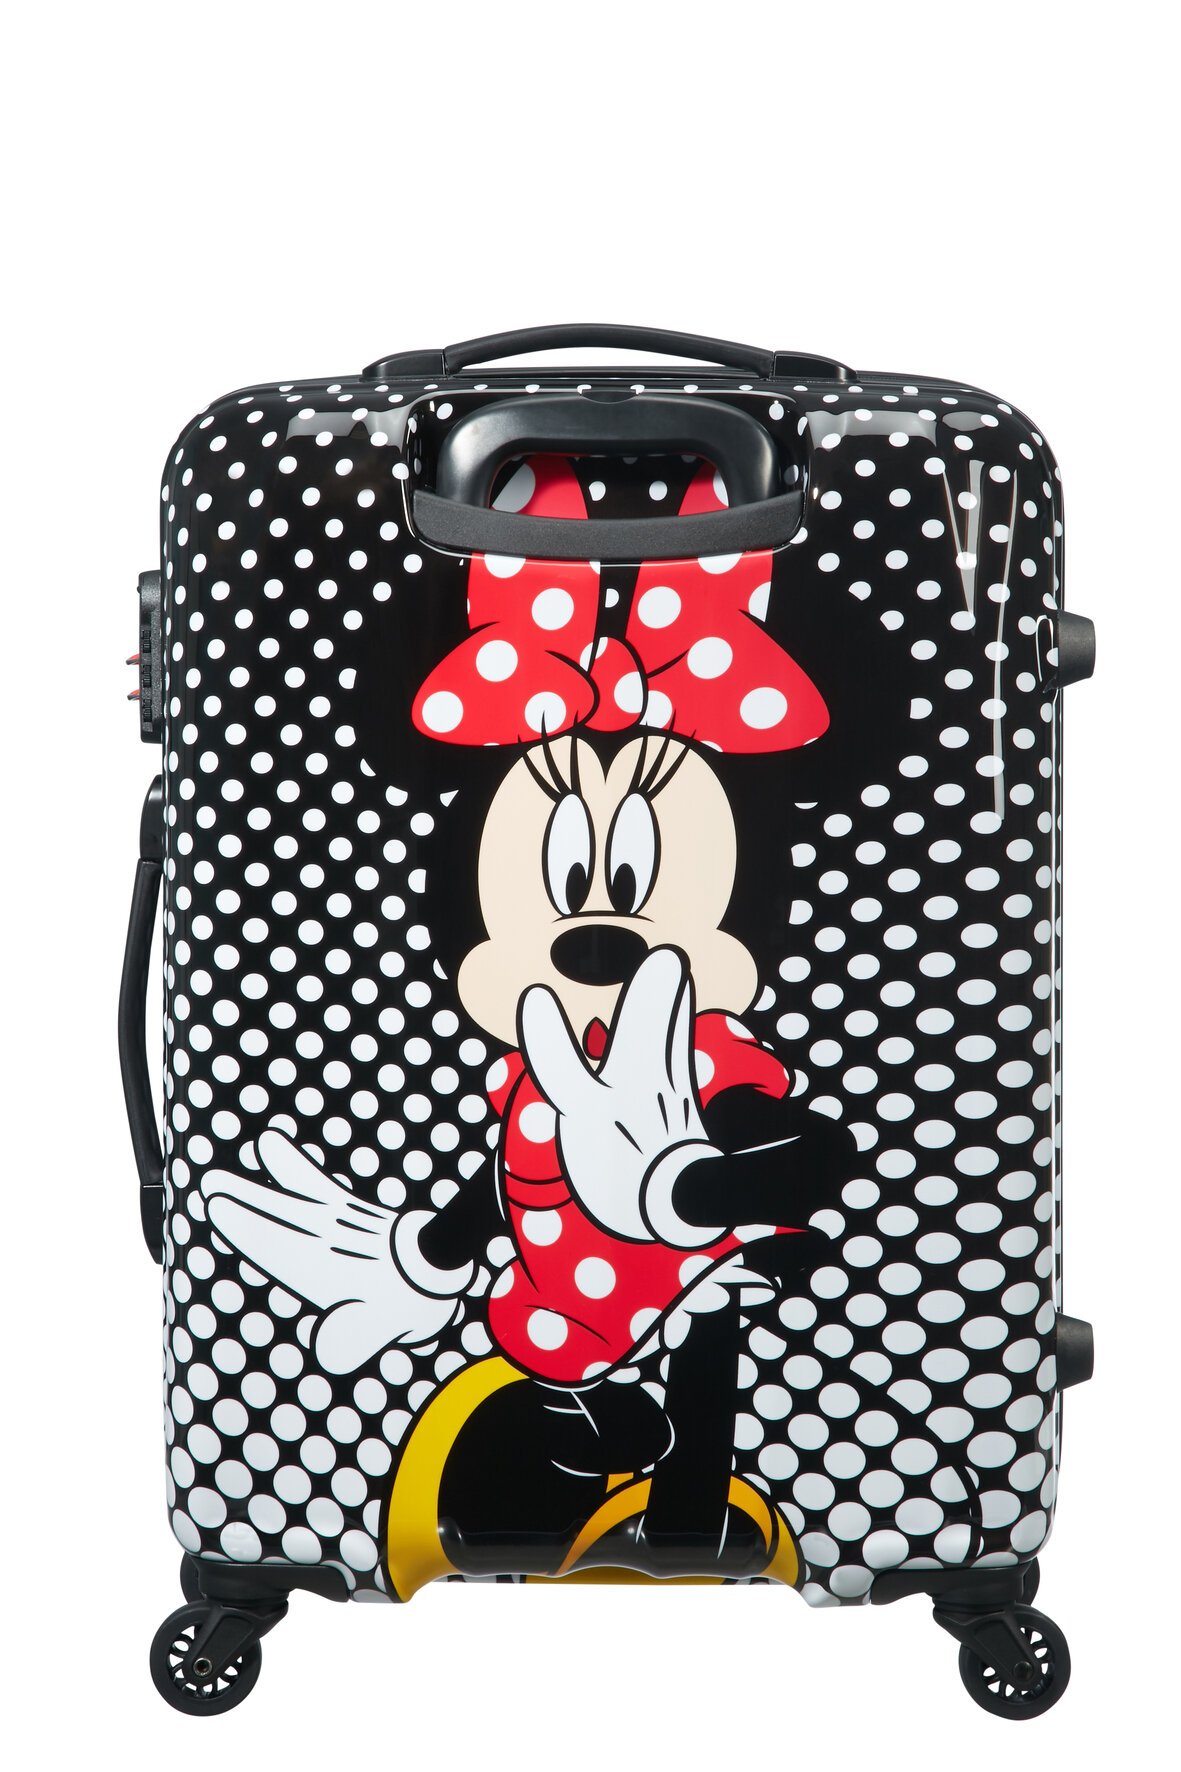 Walizka American Tourister Minie Mouse Disney Legends spin.65/24 widok na walizkę od tyłu